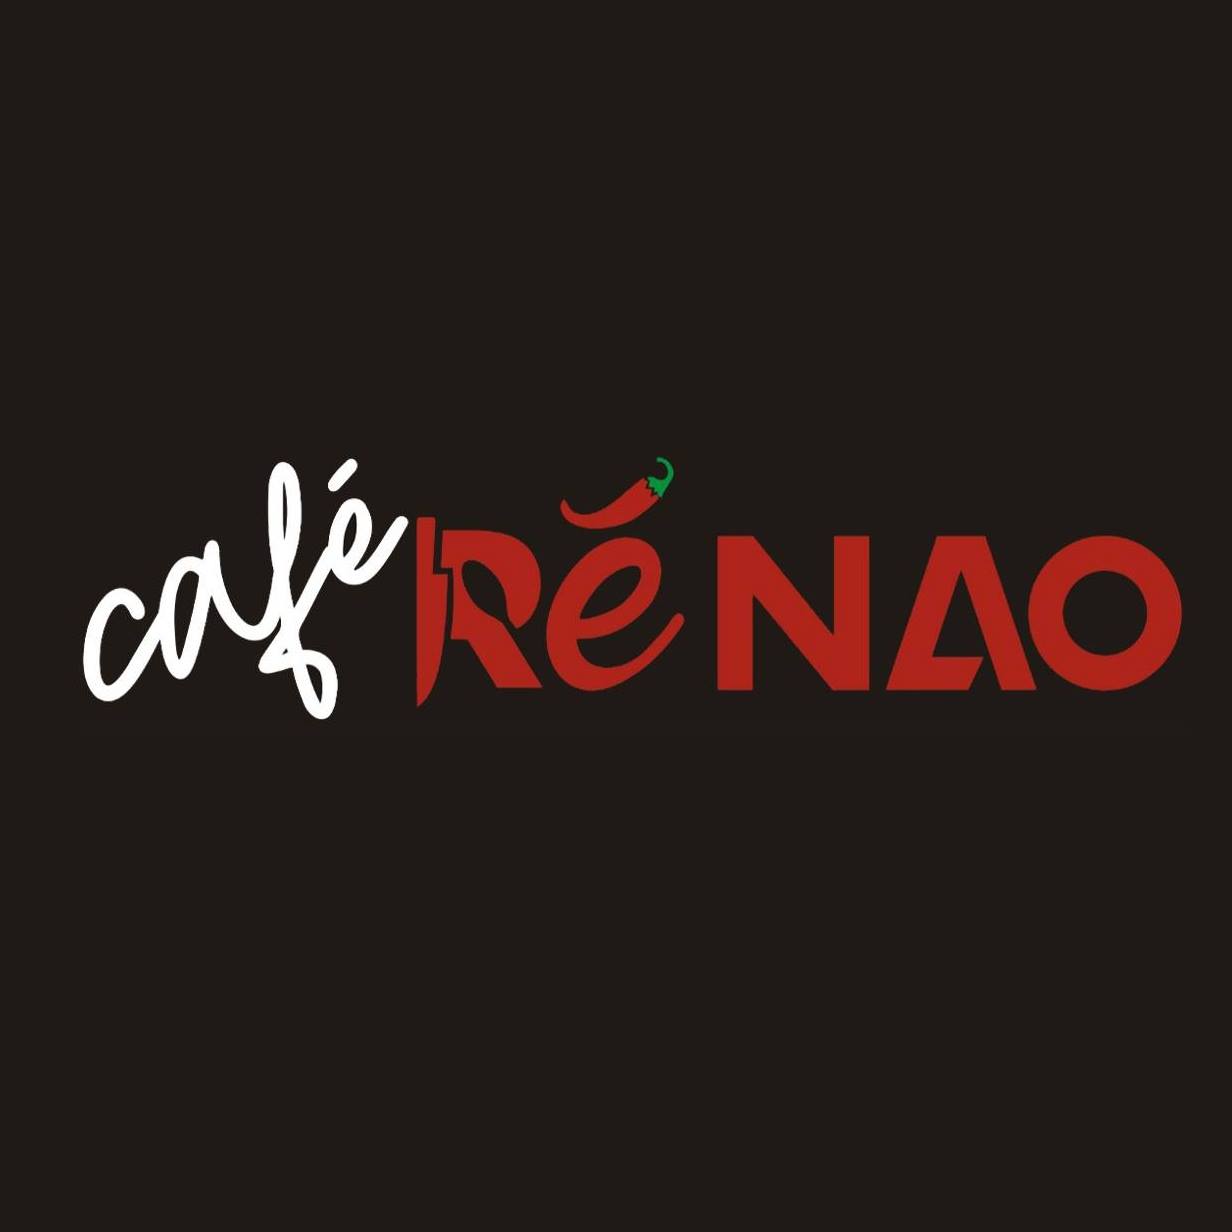 Cafe Re Nao